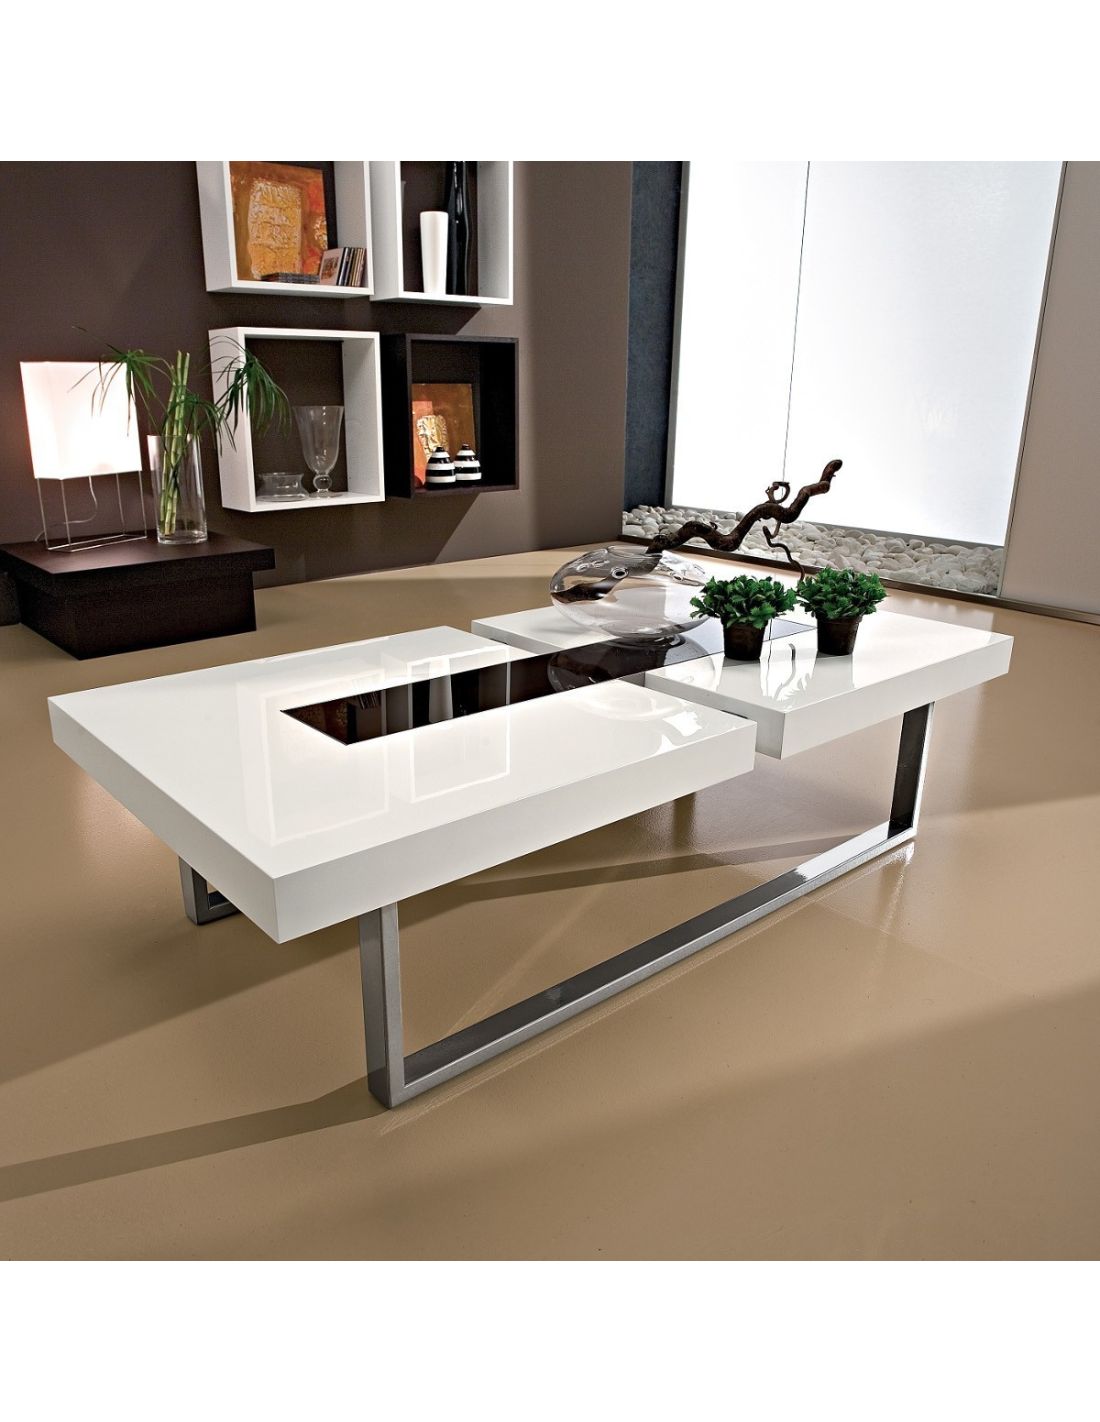 Klemens tavolino da salotto in legno metallo vetro 125 x 60 cm for Tavolini in legno